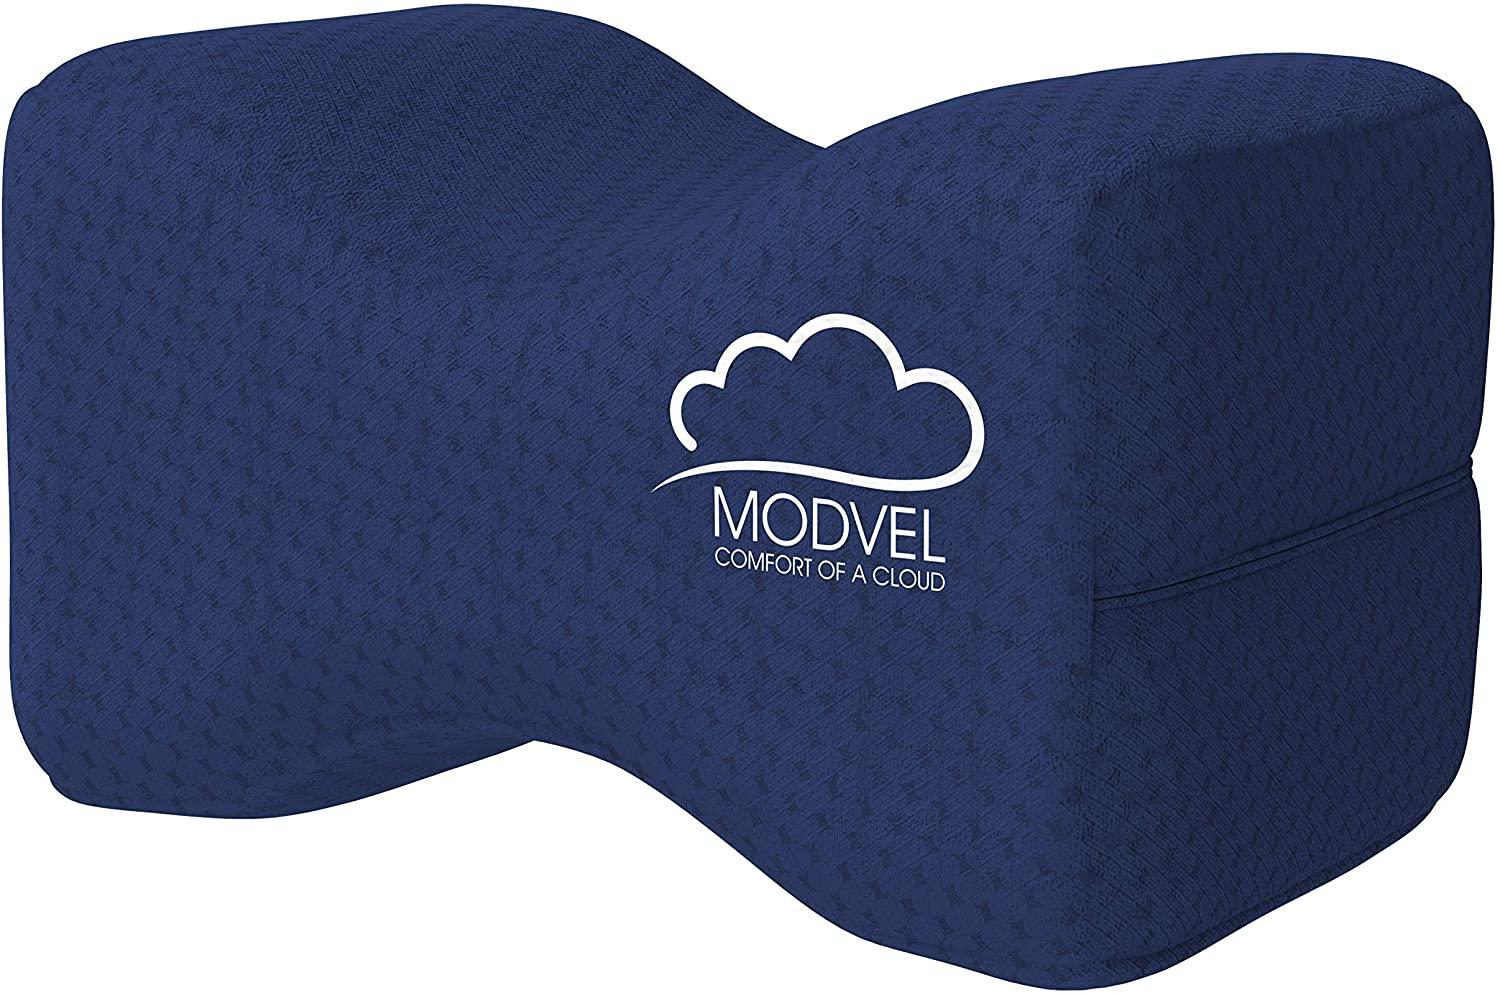 Modvel Memory Foam Orthopedic Knee Pillow for $12